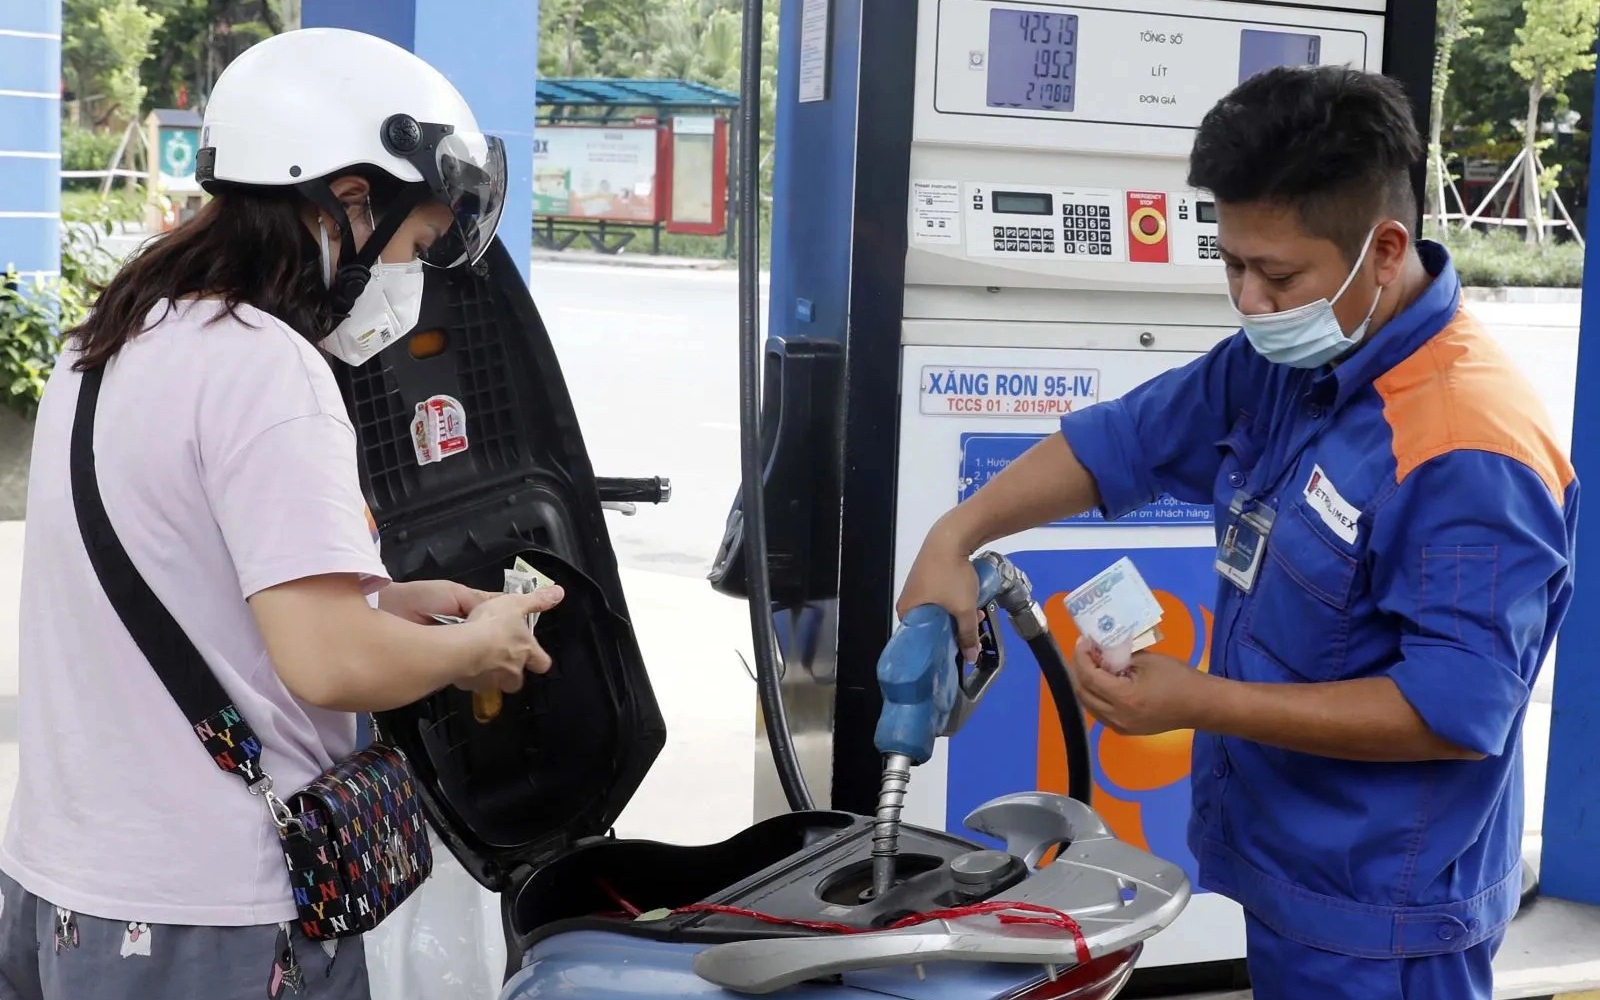 Giá xăng RON 95 giảm nhẹ, giá dầu diesel tăng gần ngưỡng 21.000 đồng/lít